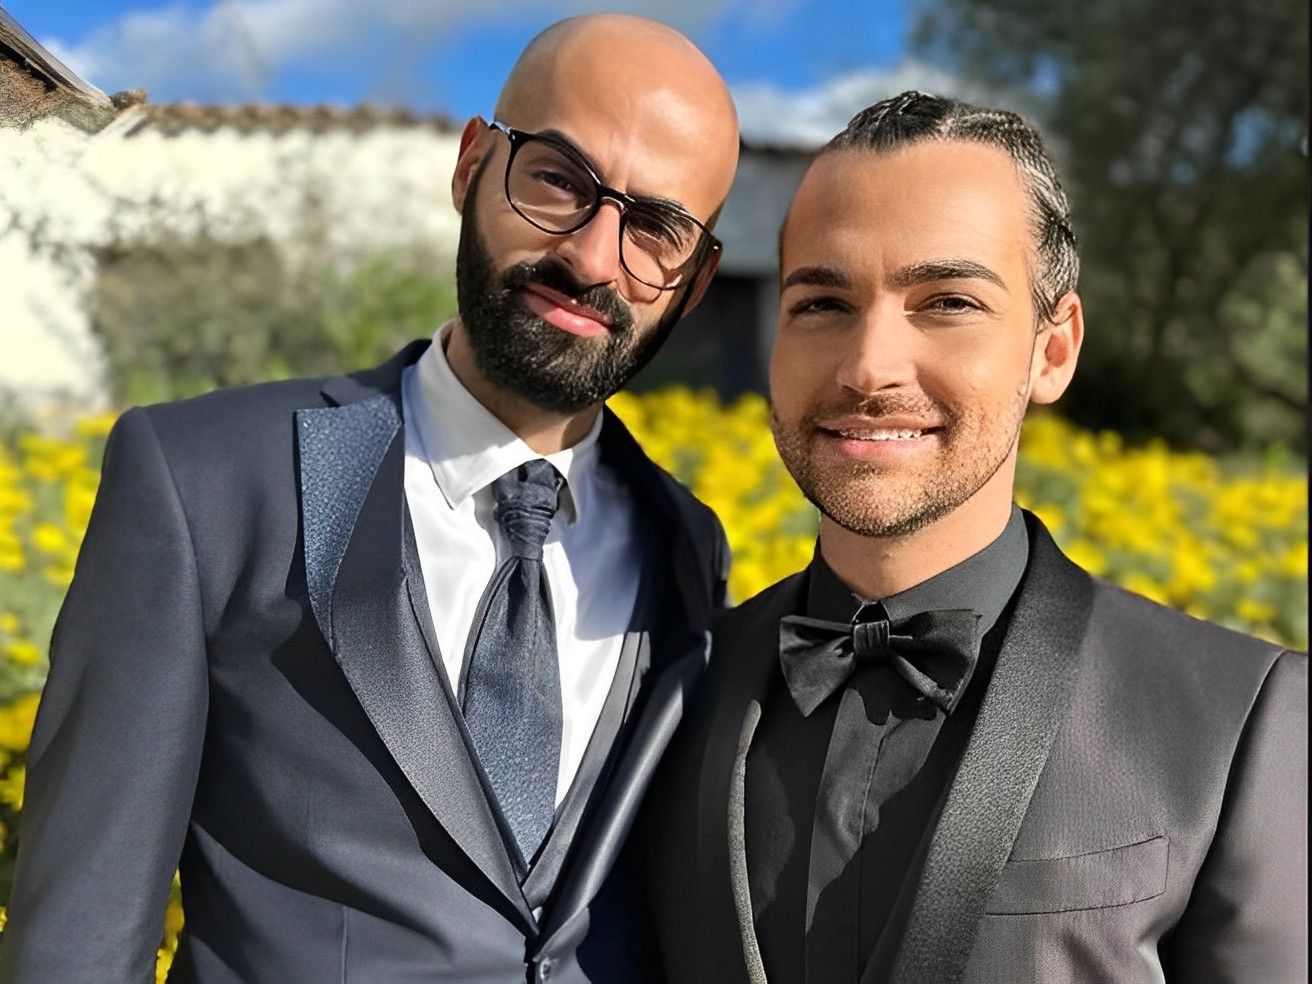 Una storia d’amore da favola: Valerio Scanu sposa il suo principe azzurro siciliano